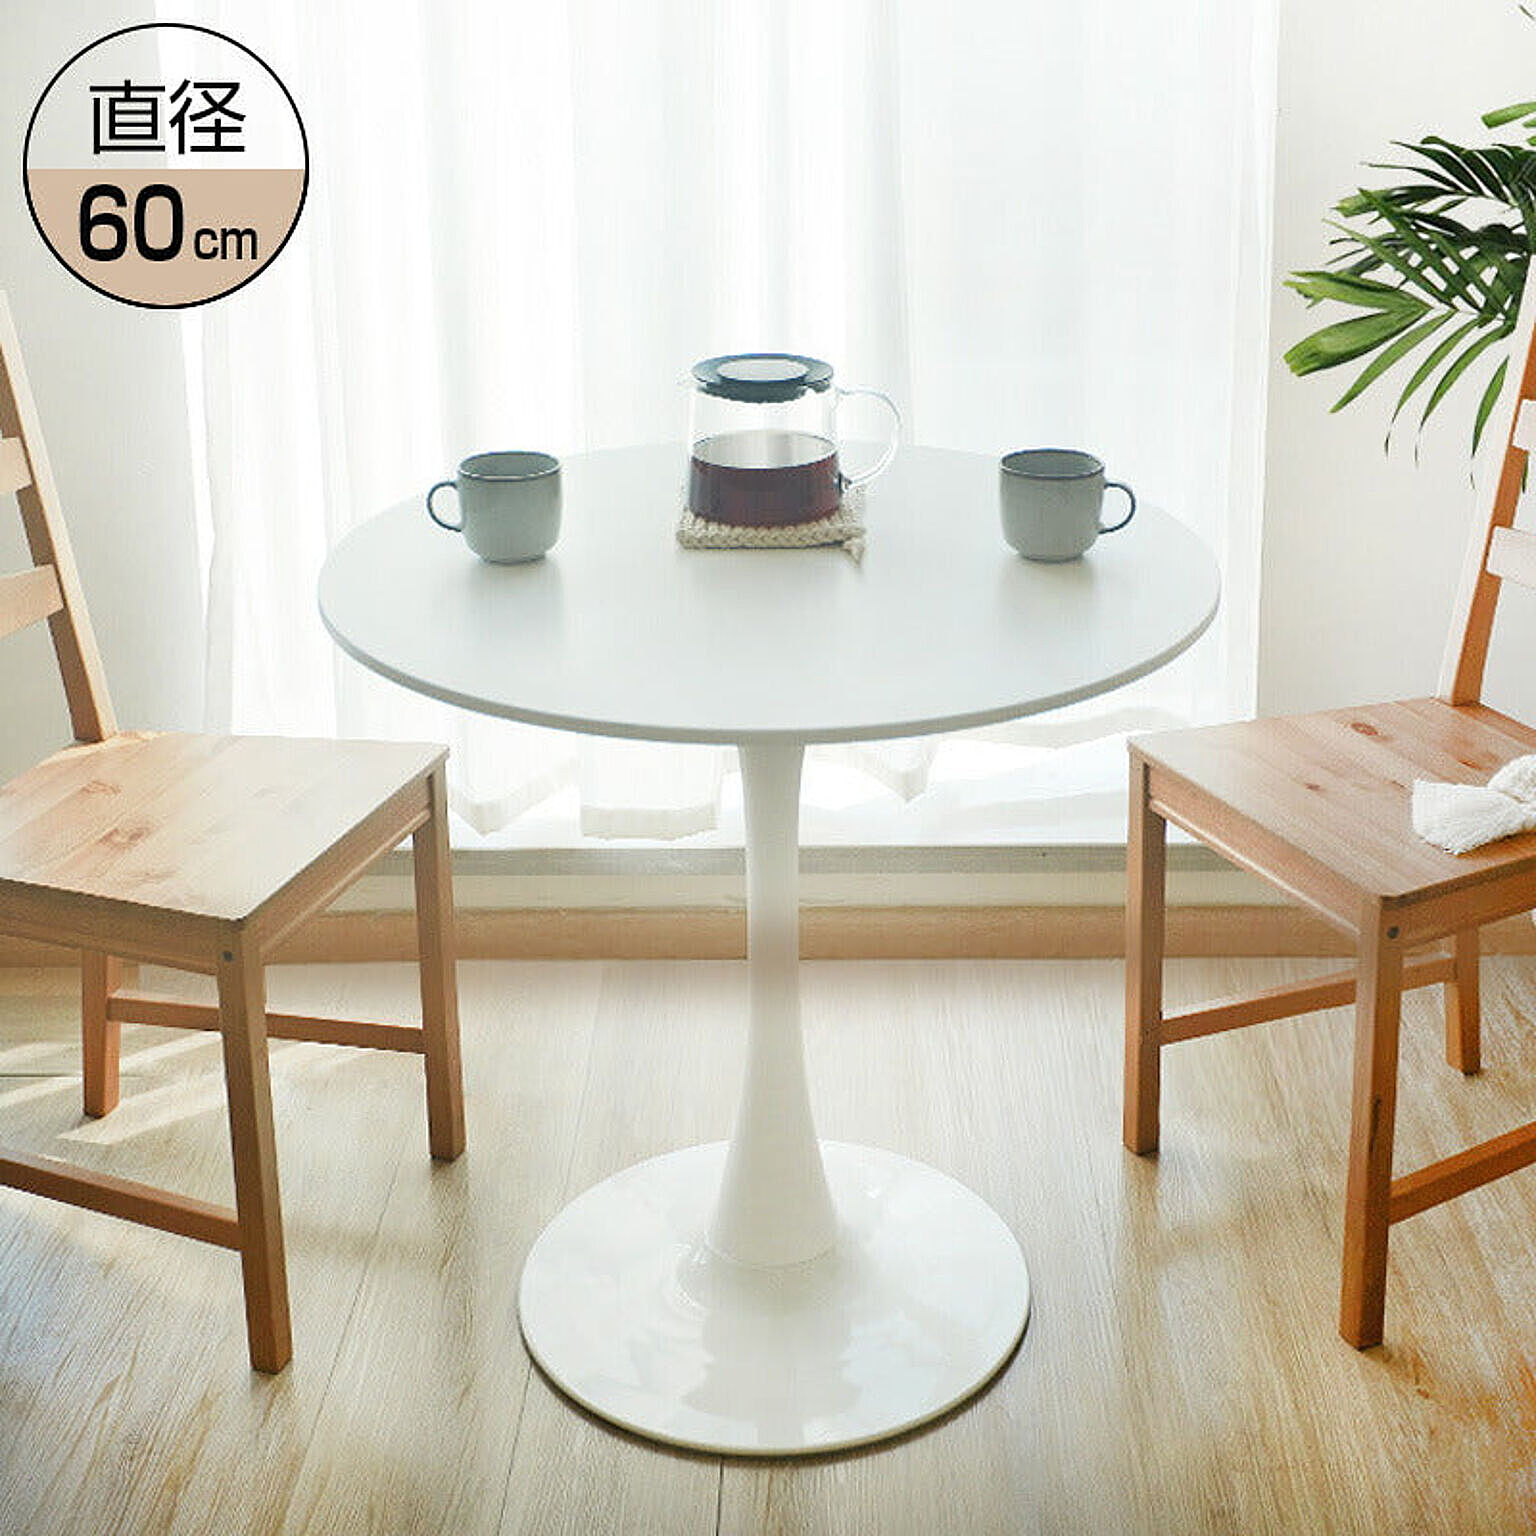 ダイニングテーブル 丸テーブル 白 幅60cm 組み立て簡単 お手入れ簡単 円形 スチール MDF ホワイト 省スペース コンパクト 2人用 3人用 おしゃれ 北欧 一人暮らし